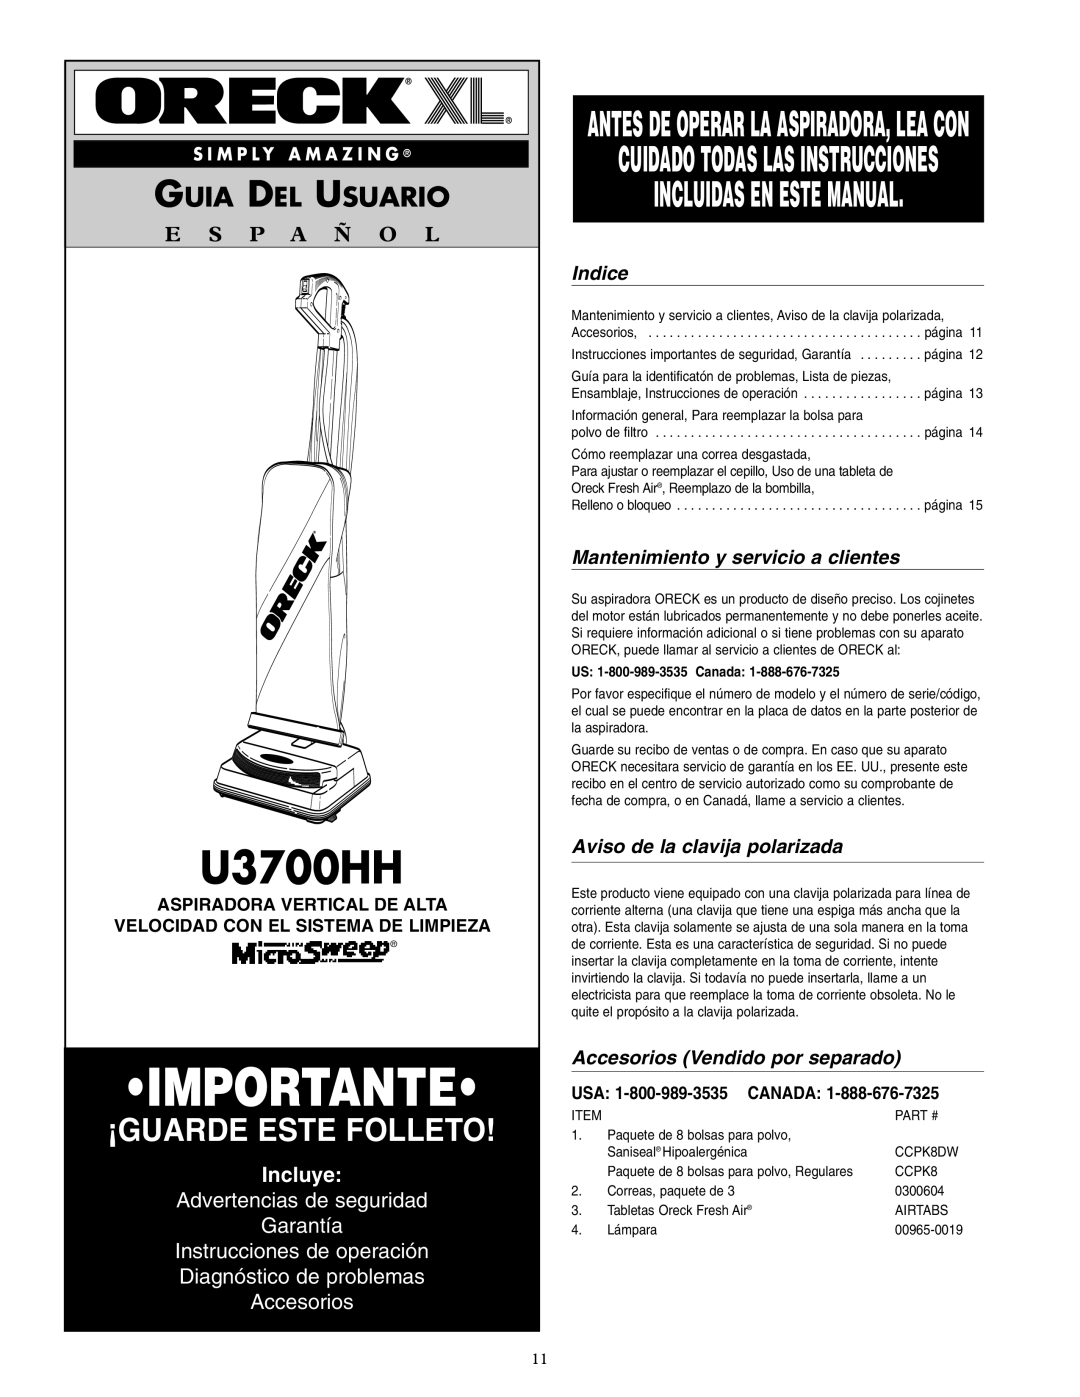 Oreck U3700HH Incluidas En Este Manual, Guia Del Usuario, E S P A Ñ O L, Incluye, Advertencias de seguridad Garantía 